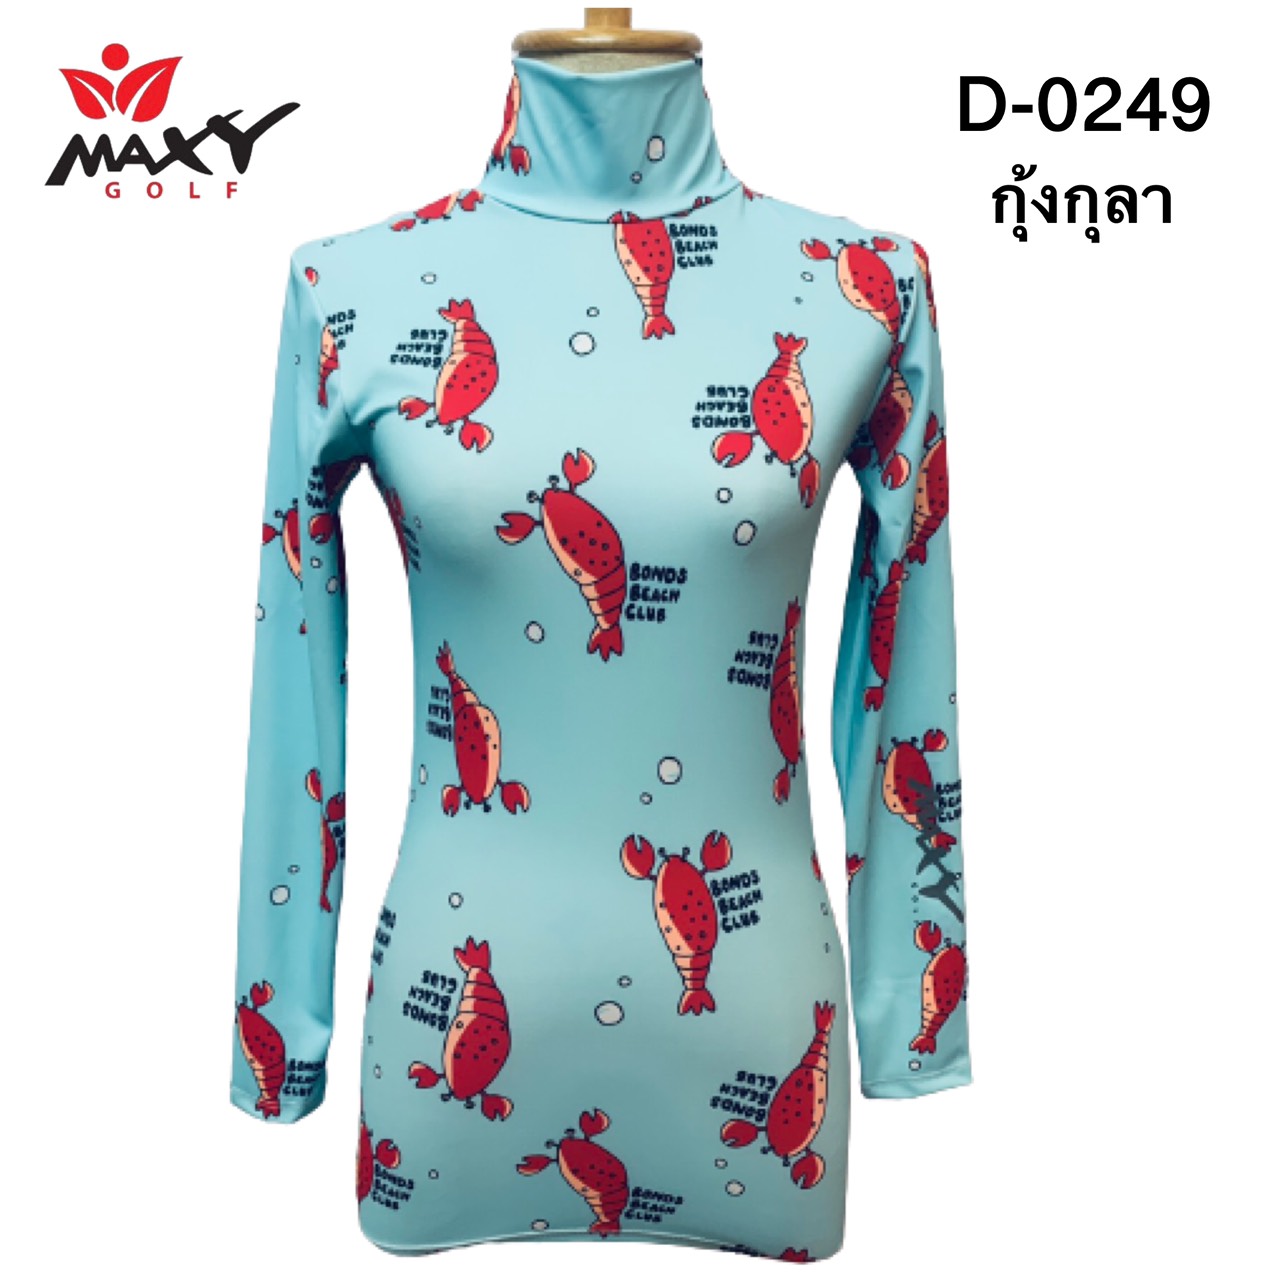 เสื้อบอดี้ฟิตกันแดด(คอเต่า)สำหรับผู้หญิง ยี่ห้อ MAXY GOLF (รหัส D-0249 กุ้งกุลา)